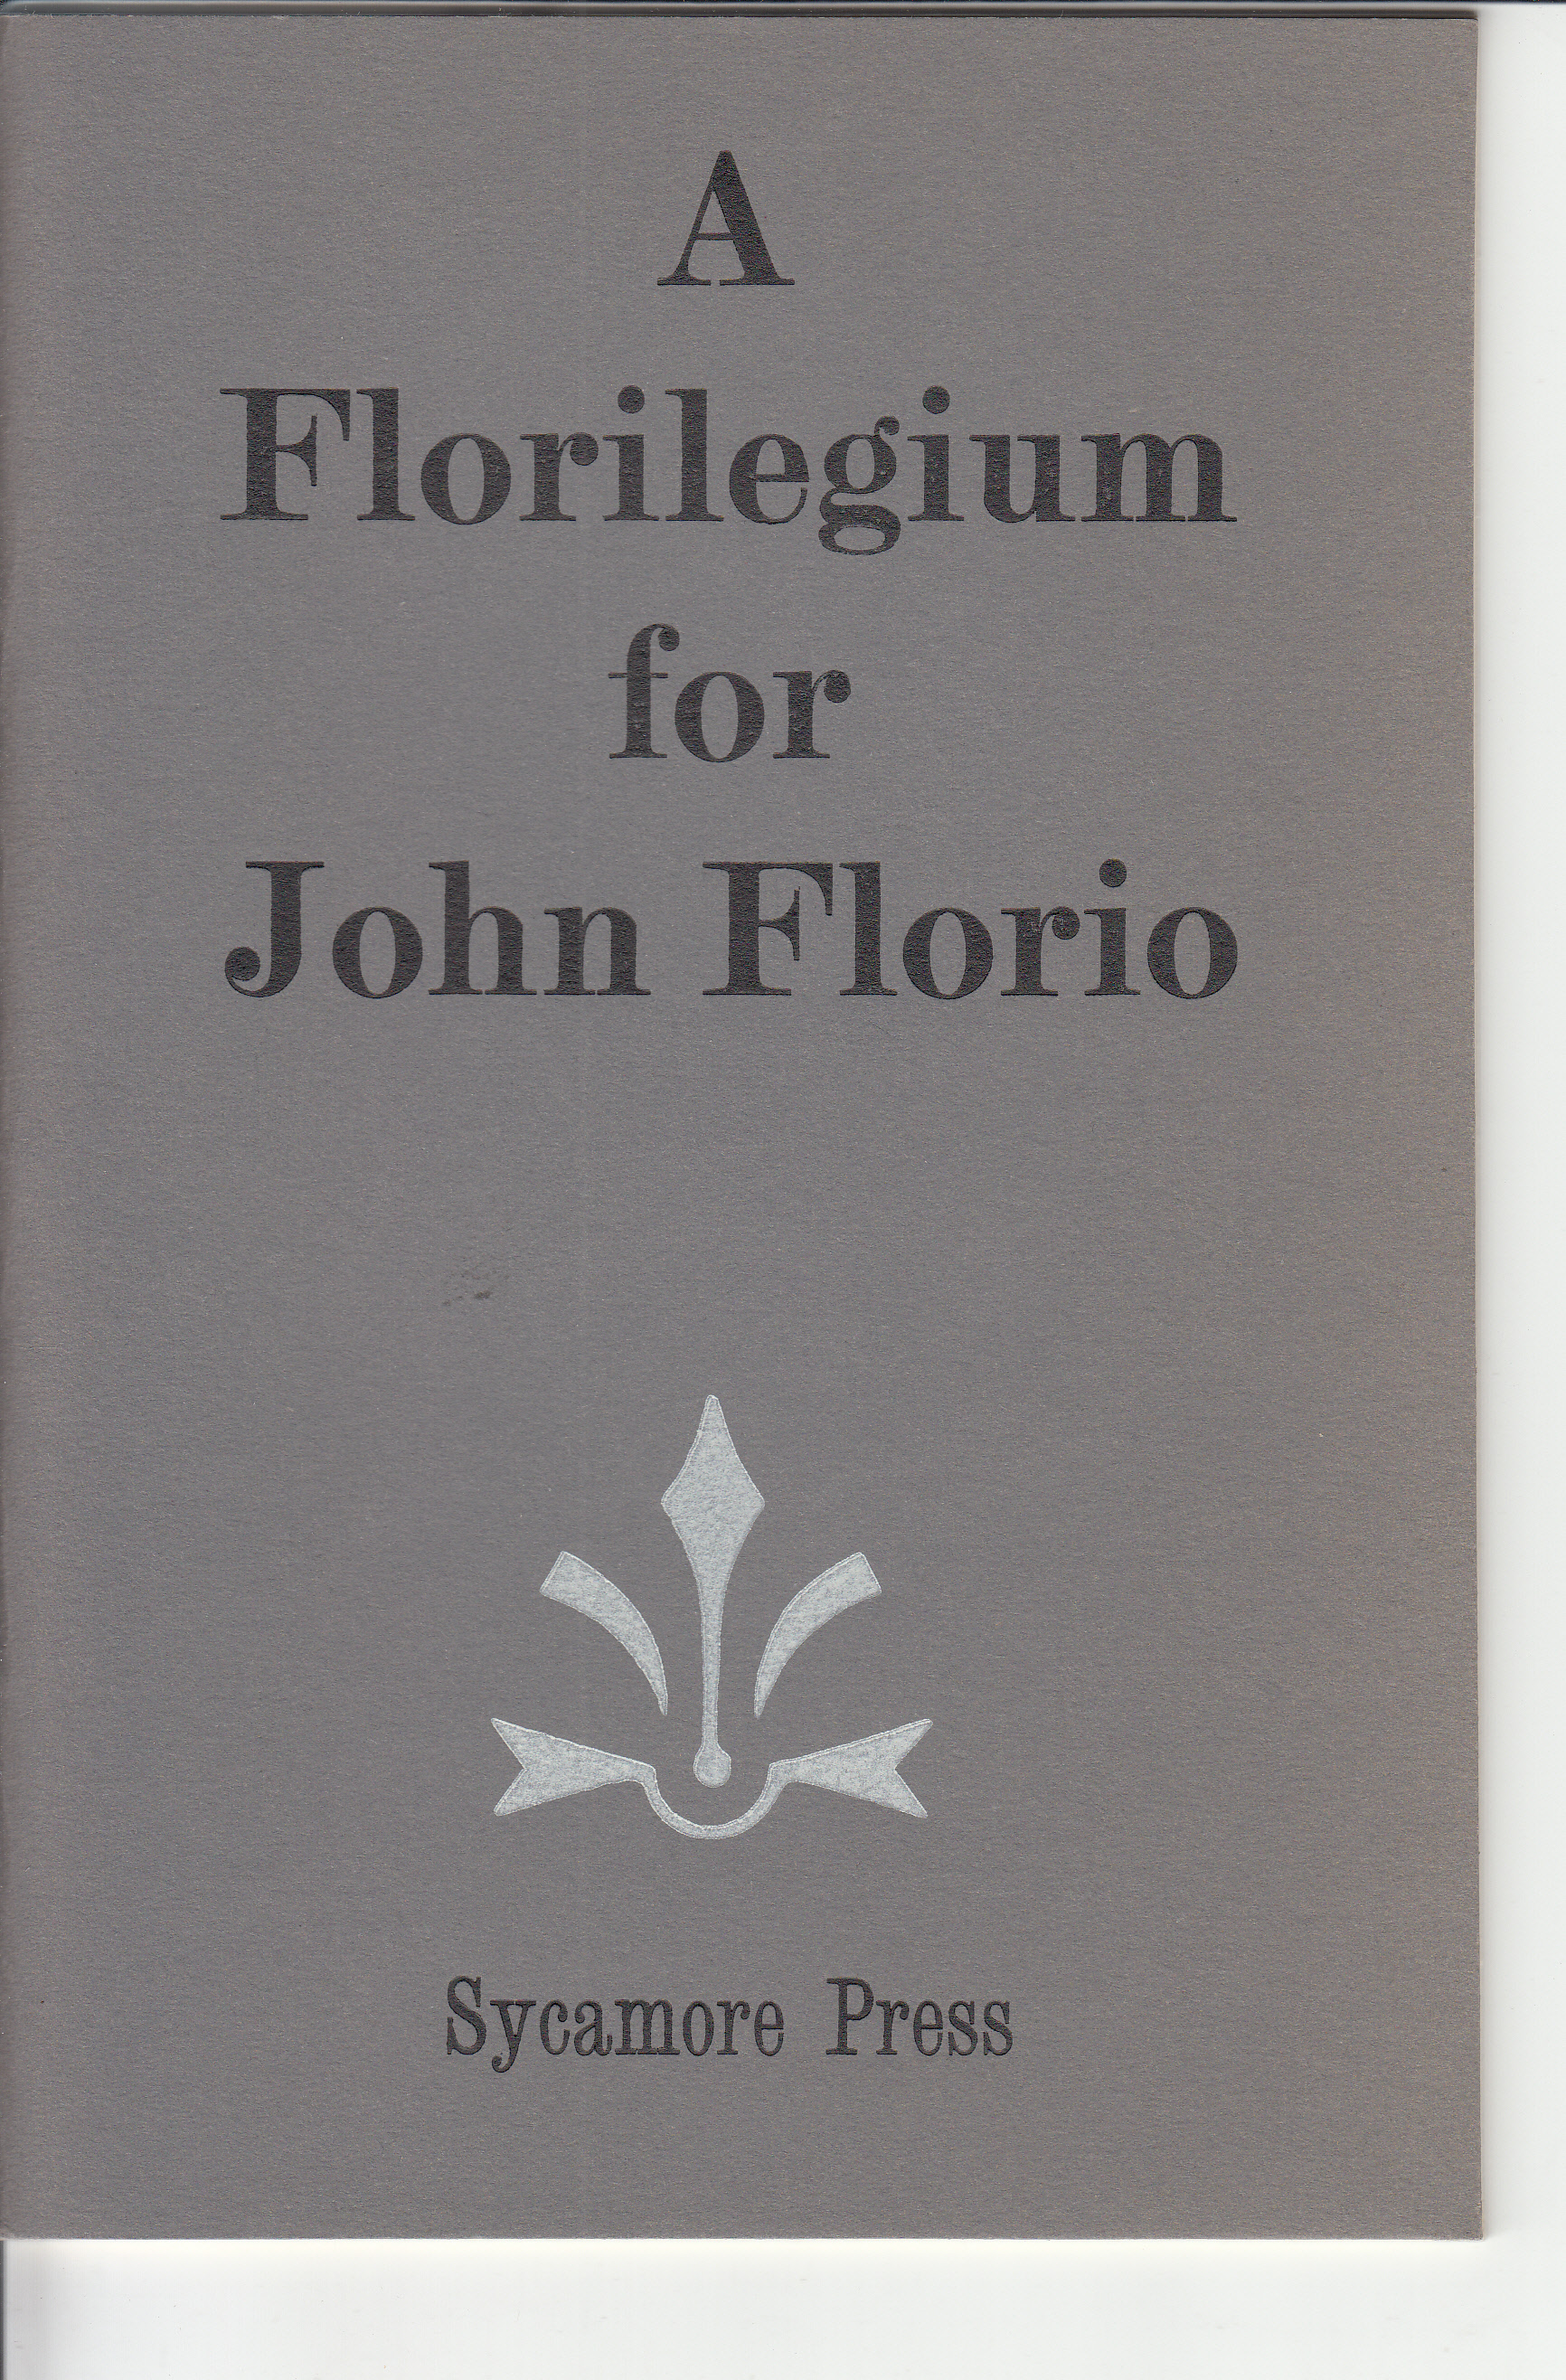 A Florilegium for John Florio.